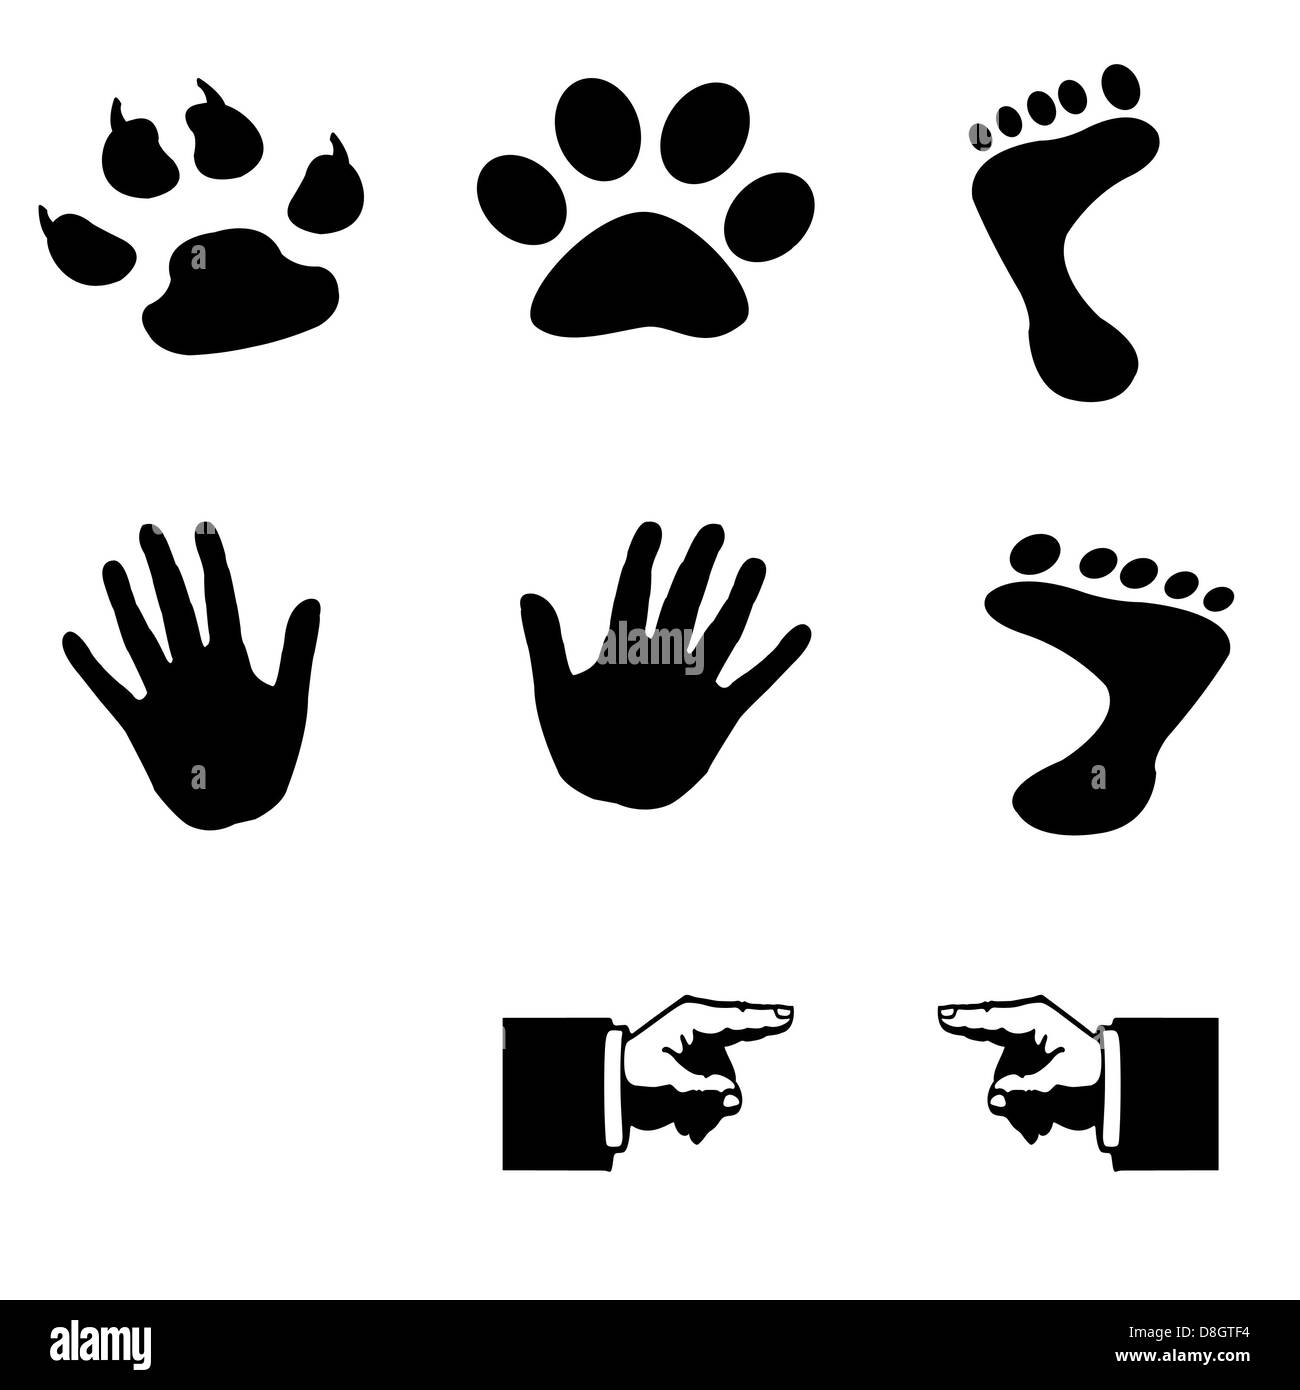 Diese Silhouette Hand Und Pfote Hund Und Katze Tatze Und Hand Und Fuss Stockfotografie Alamy